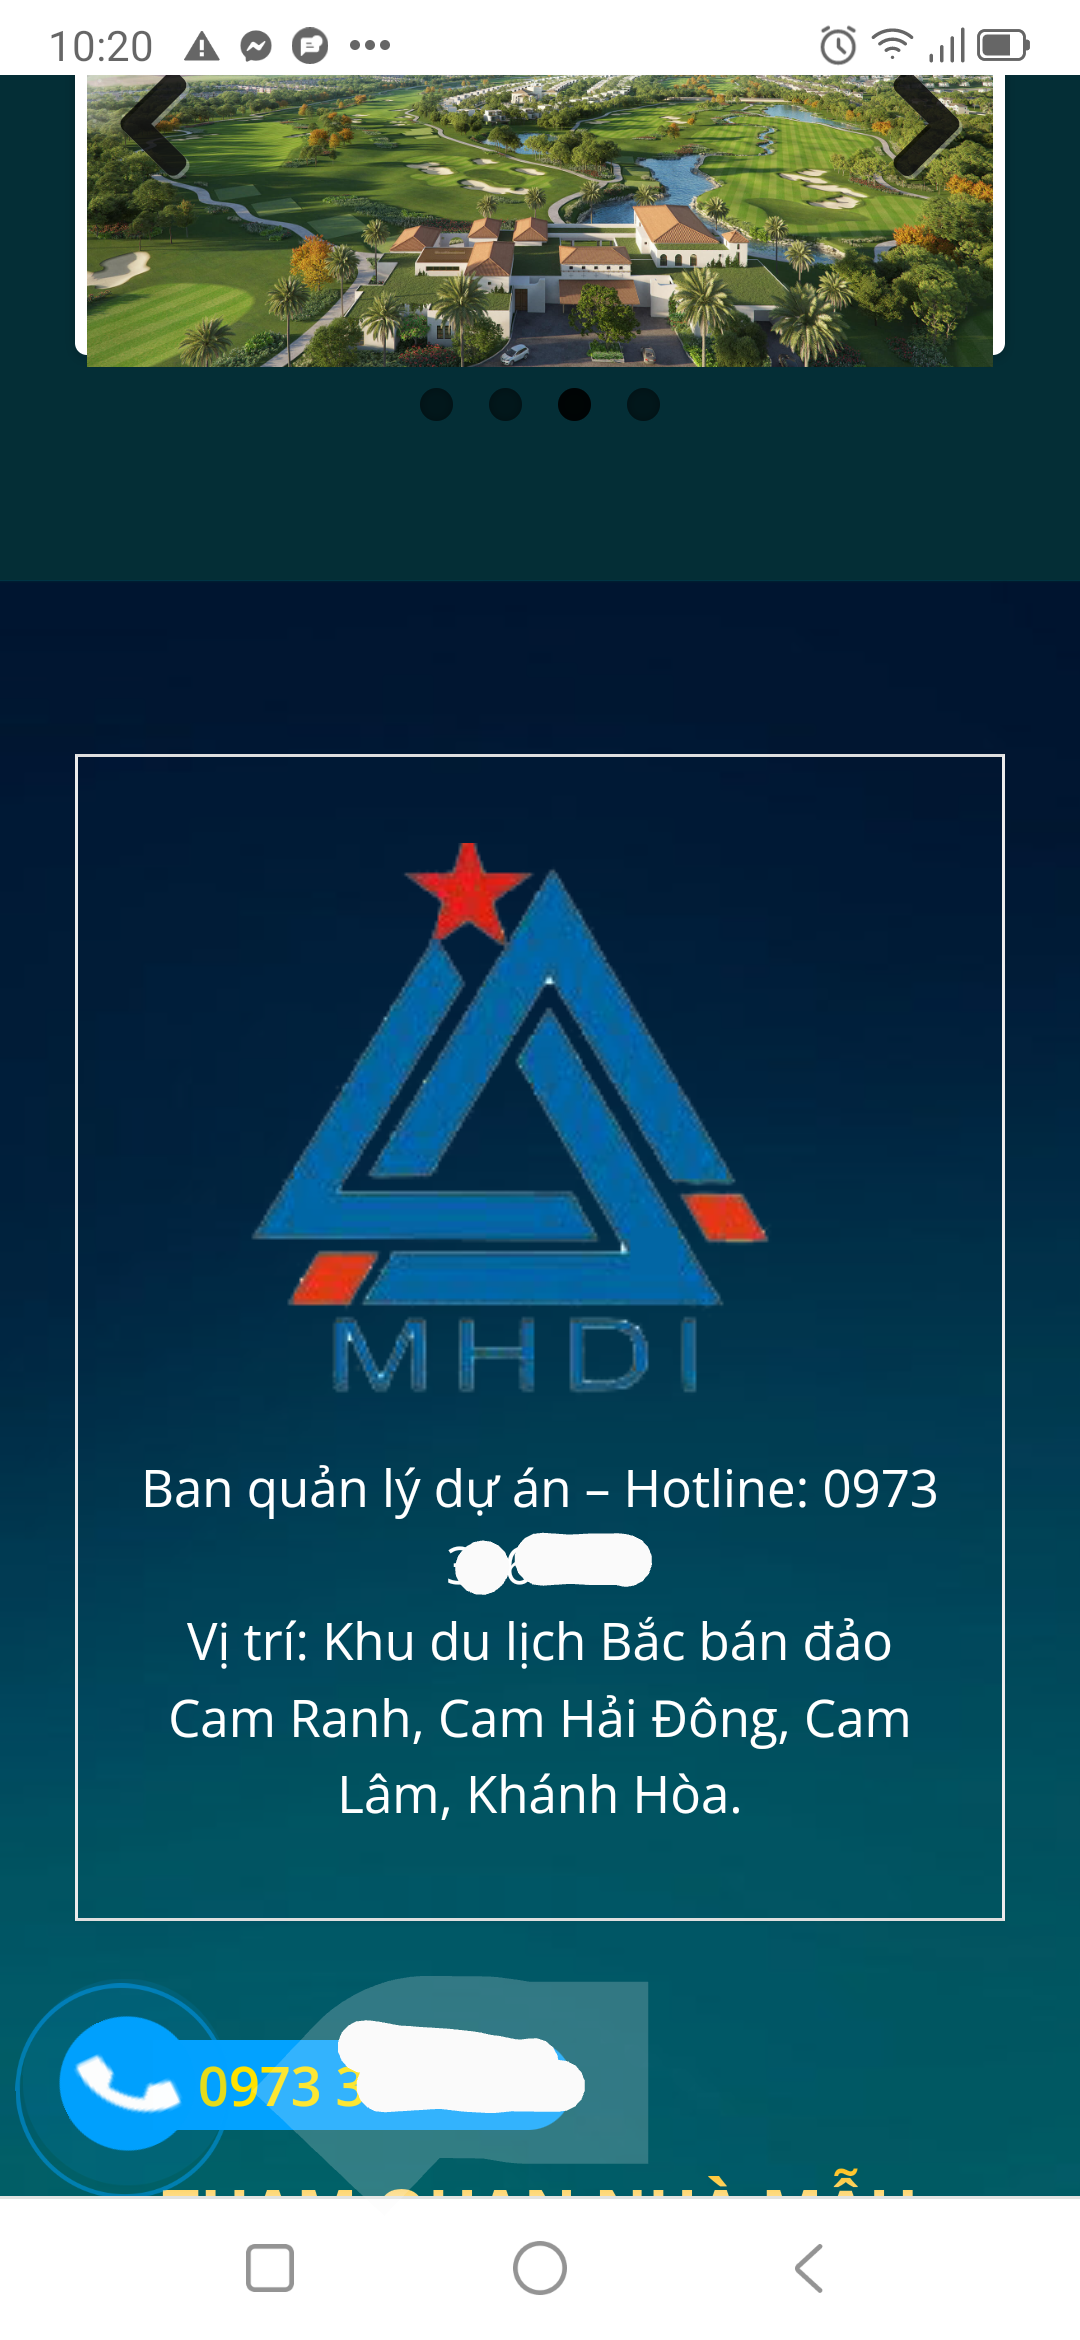 Biệt thự MHDI Hải quân vùng 4 giao bán công khai trên mạng chỉ là lừa đảo - Ảnh 2.